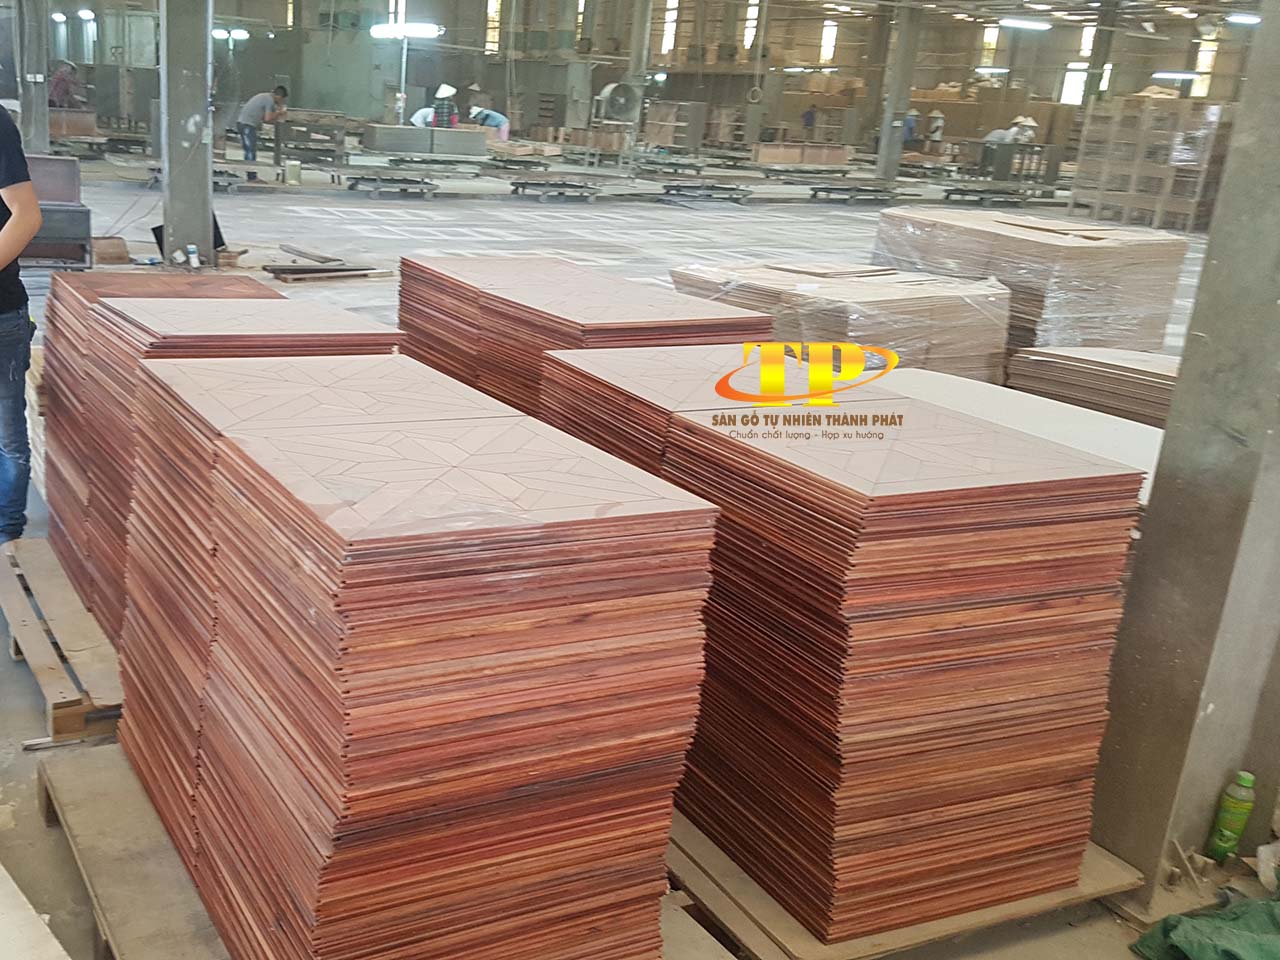 Sàn gỗ nghệ thuật Hương Lào được sản xuất tại nhà máy Thành Phát